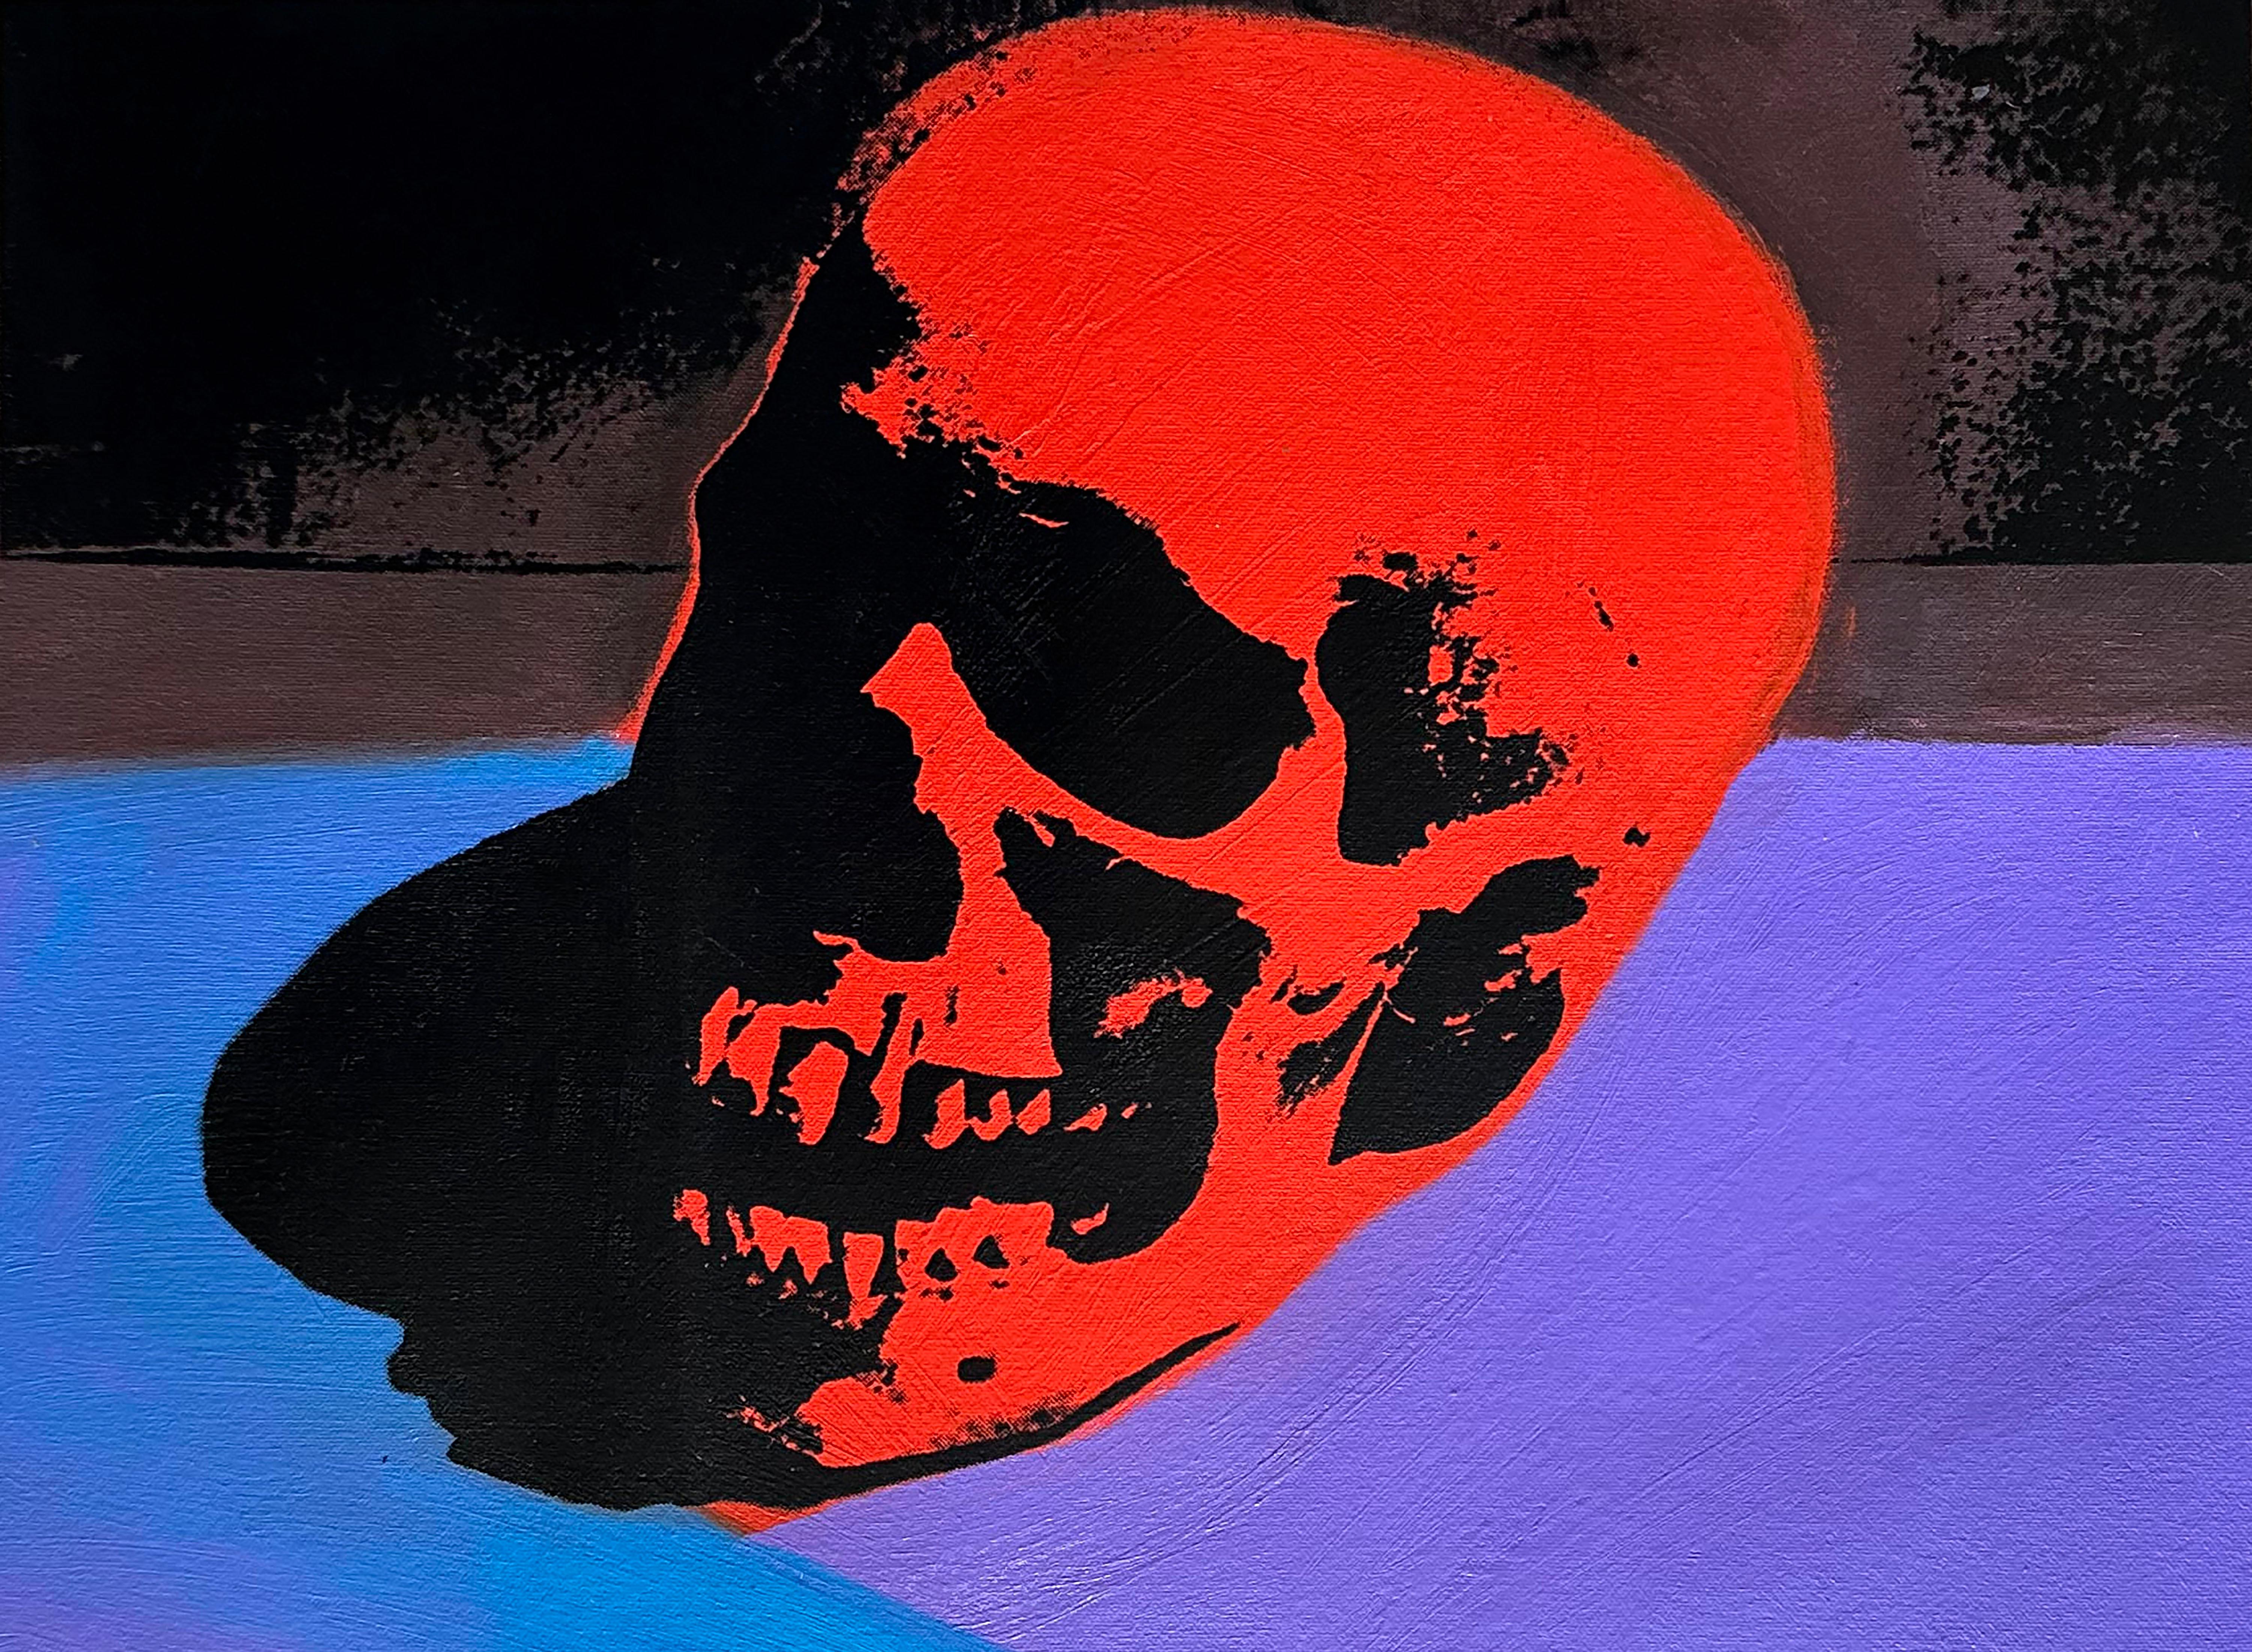 Abgelehntes Warhol-Gemälde "Roter Schädel" von Charles Lutz
Siebdruck und Acryl auf Leinen mit Verweigerungsstempel des Andy Warhol Art Authentication Board.
11 x 15" Zoll
2008

Lutz' Serie "Warhol Denied" aus dem Jahr 2007 erregte internationales